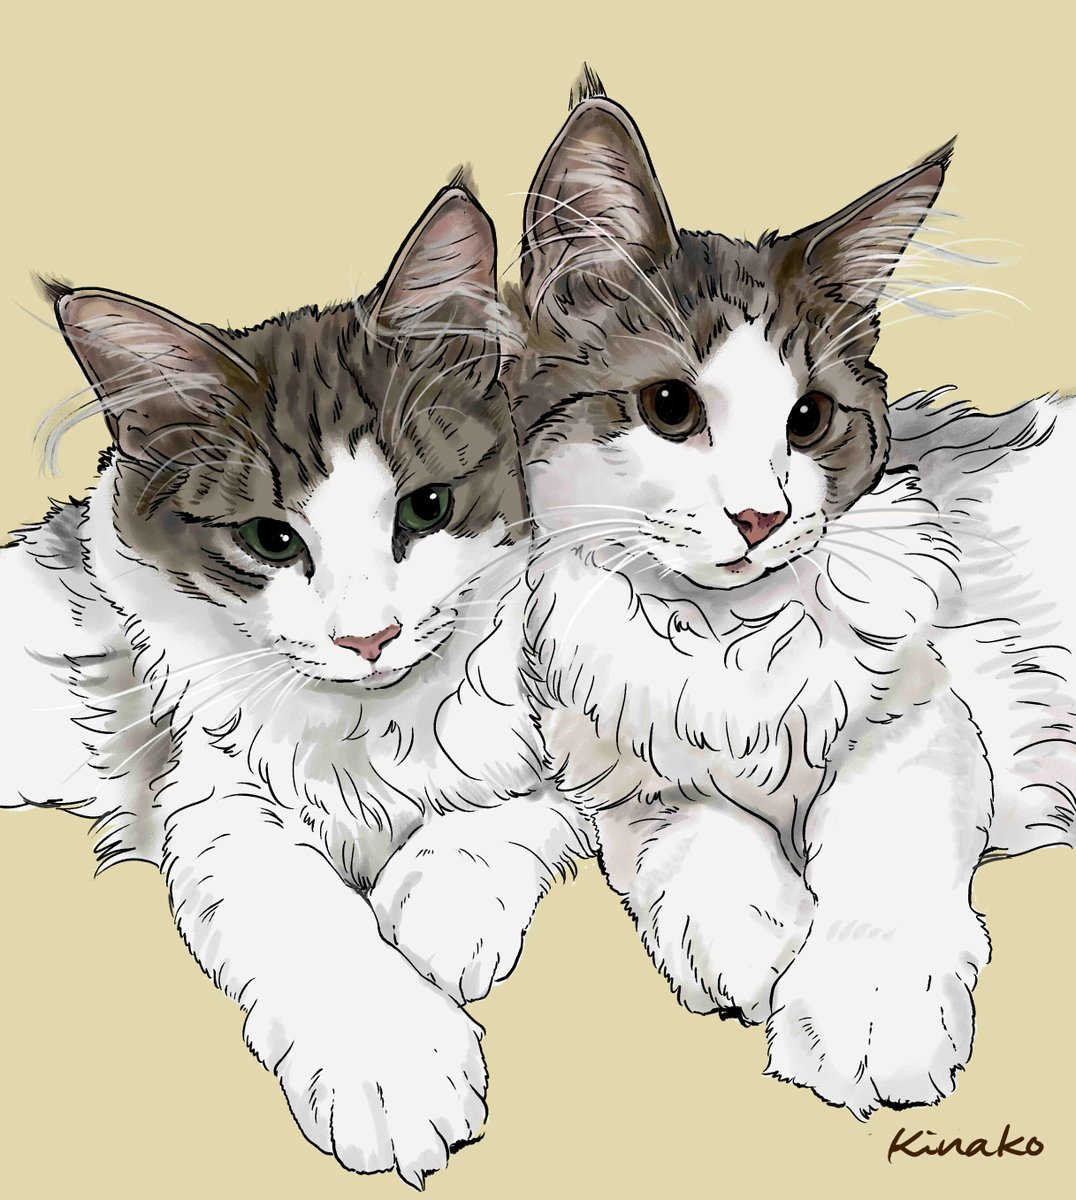 きなこ 猫の絵を描いています ノルウェージャンの子猫 ルーナちゃん ジーナちゃんです 今年の1月27日生まれの仲良し姉妹です かわいい2匹を イラストで描かせていただきました Ginaとluna Jillのんびり更新さん Chakoaruki 猫絵 Cat Drawing